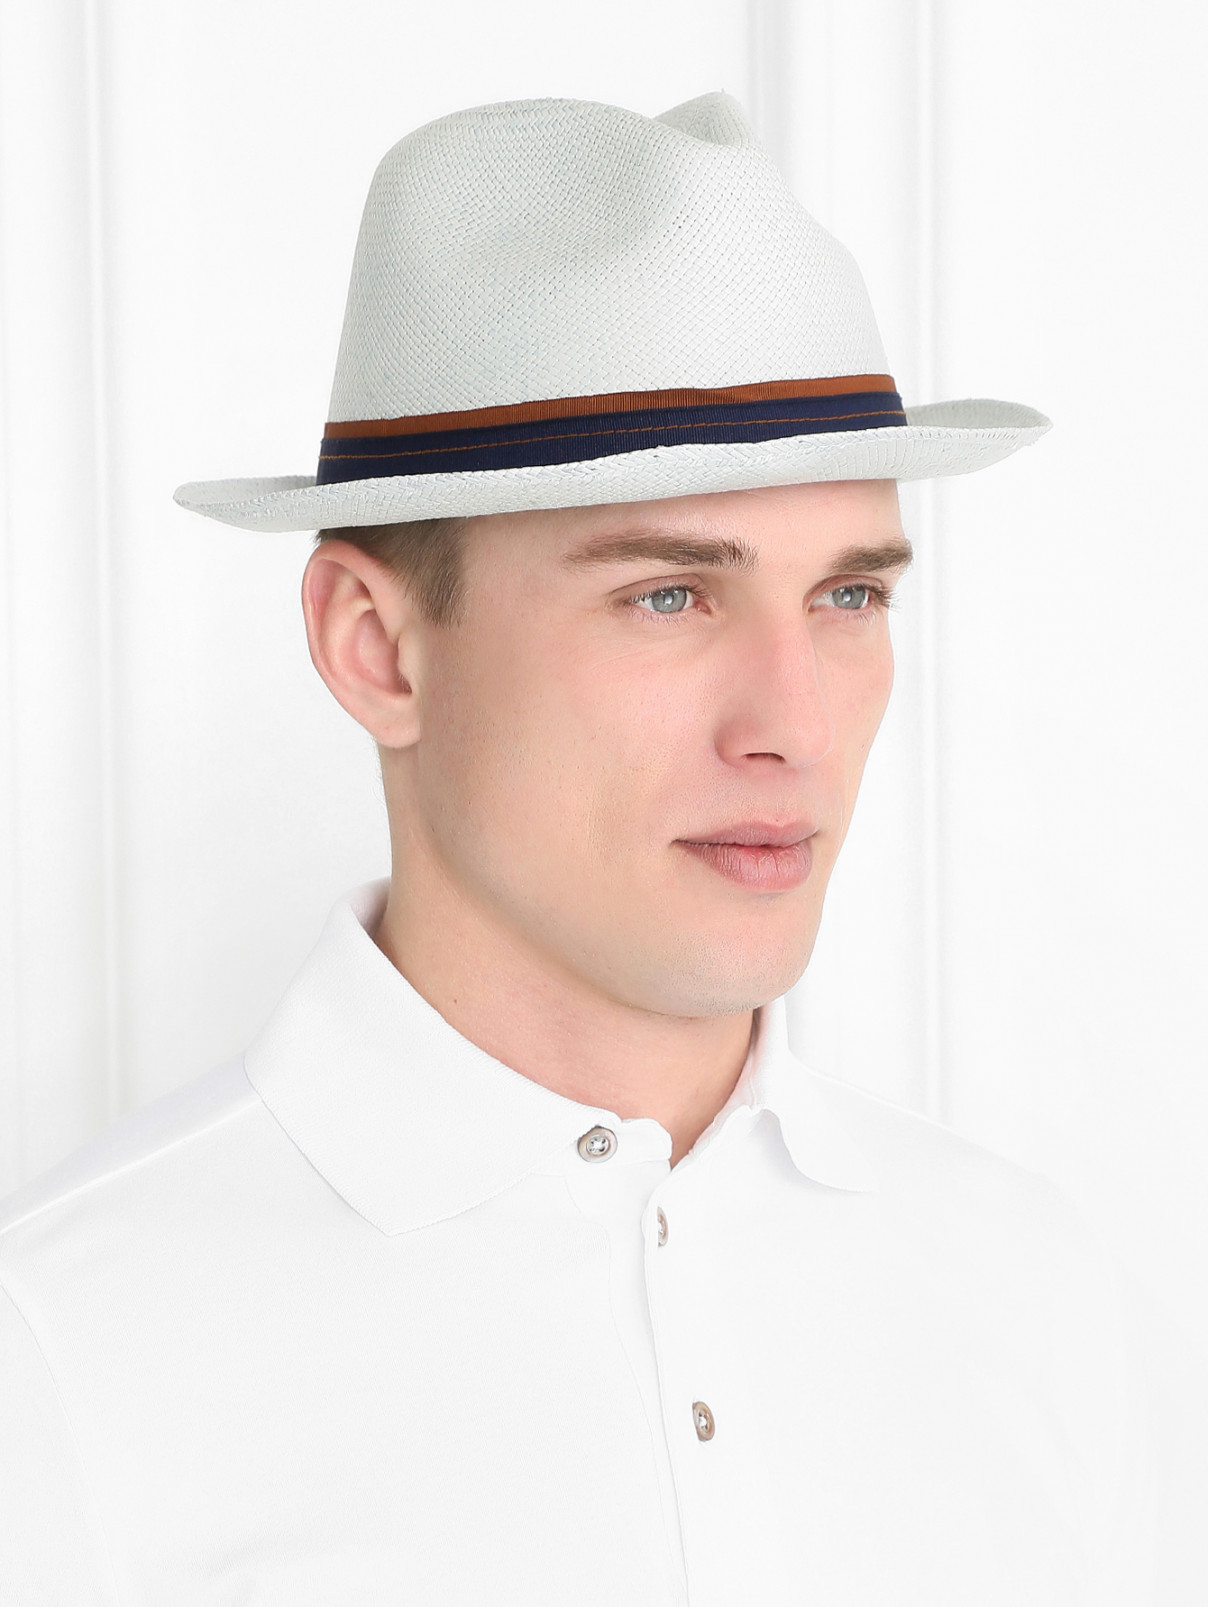 Шляпа соломенная с контрастной вставкой Stetson  –  Модель Общий вид  – Цвет:  Синий